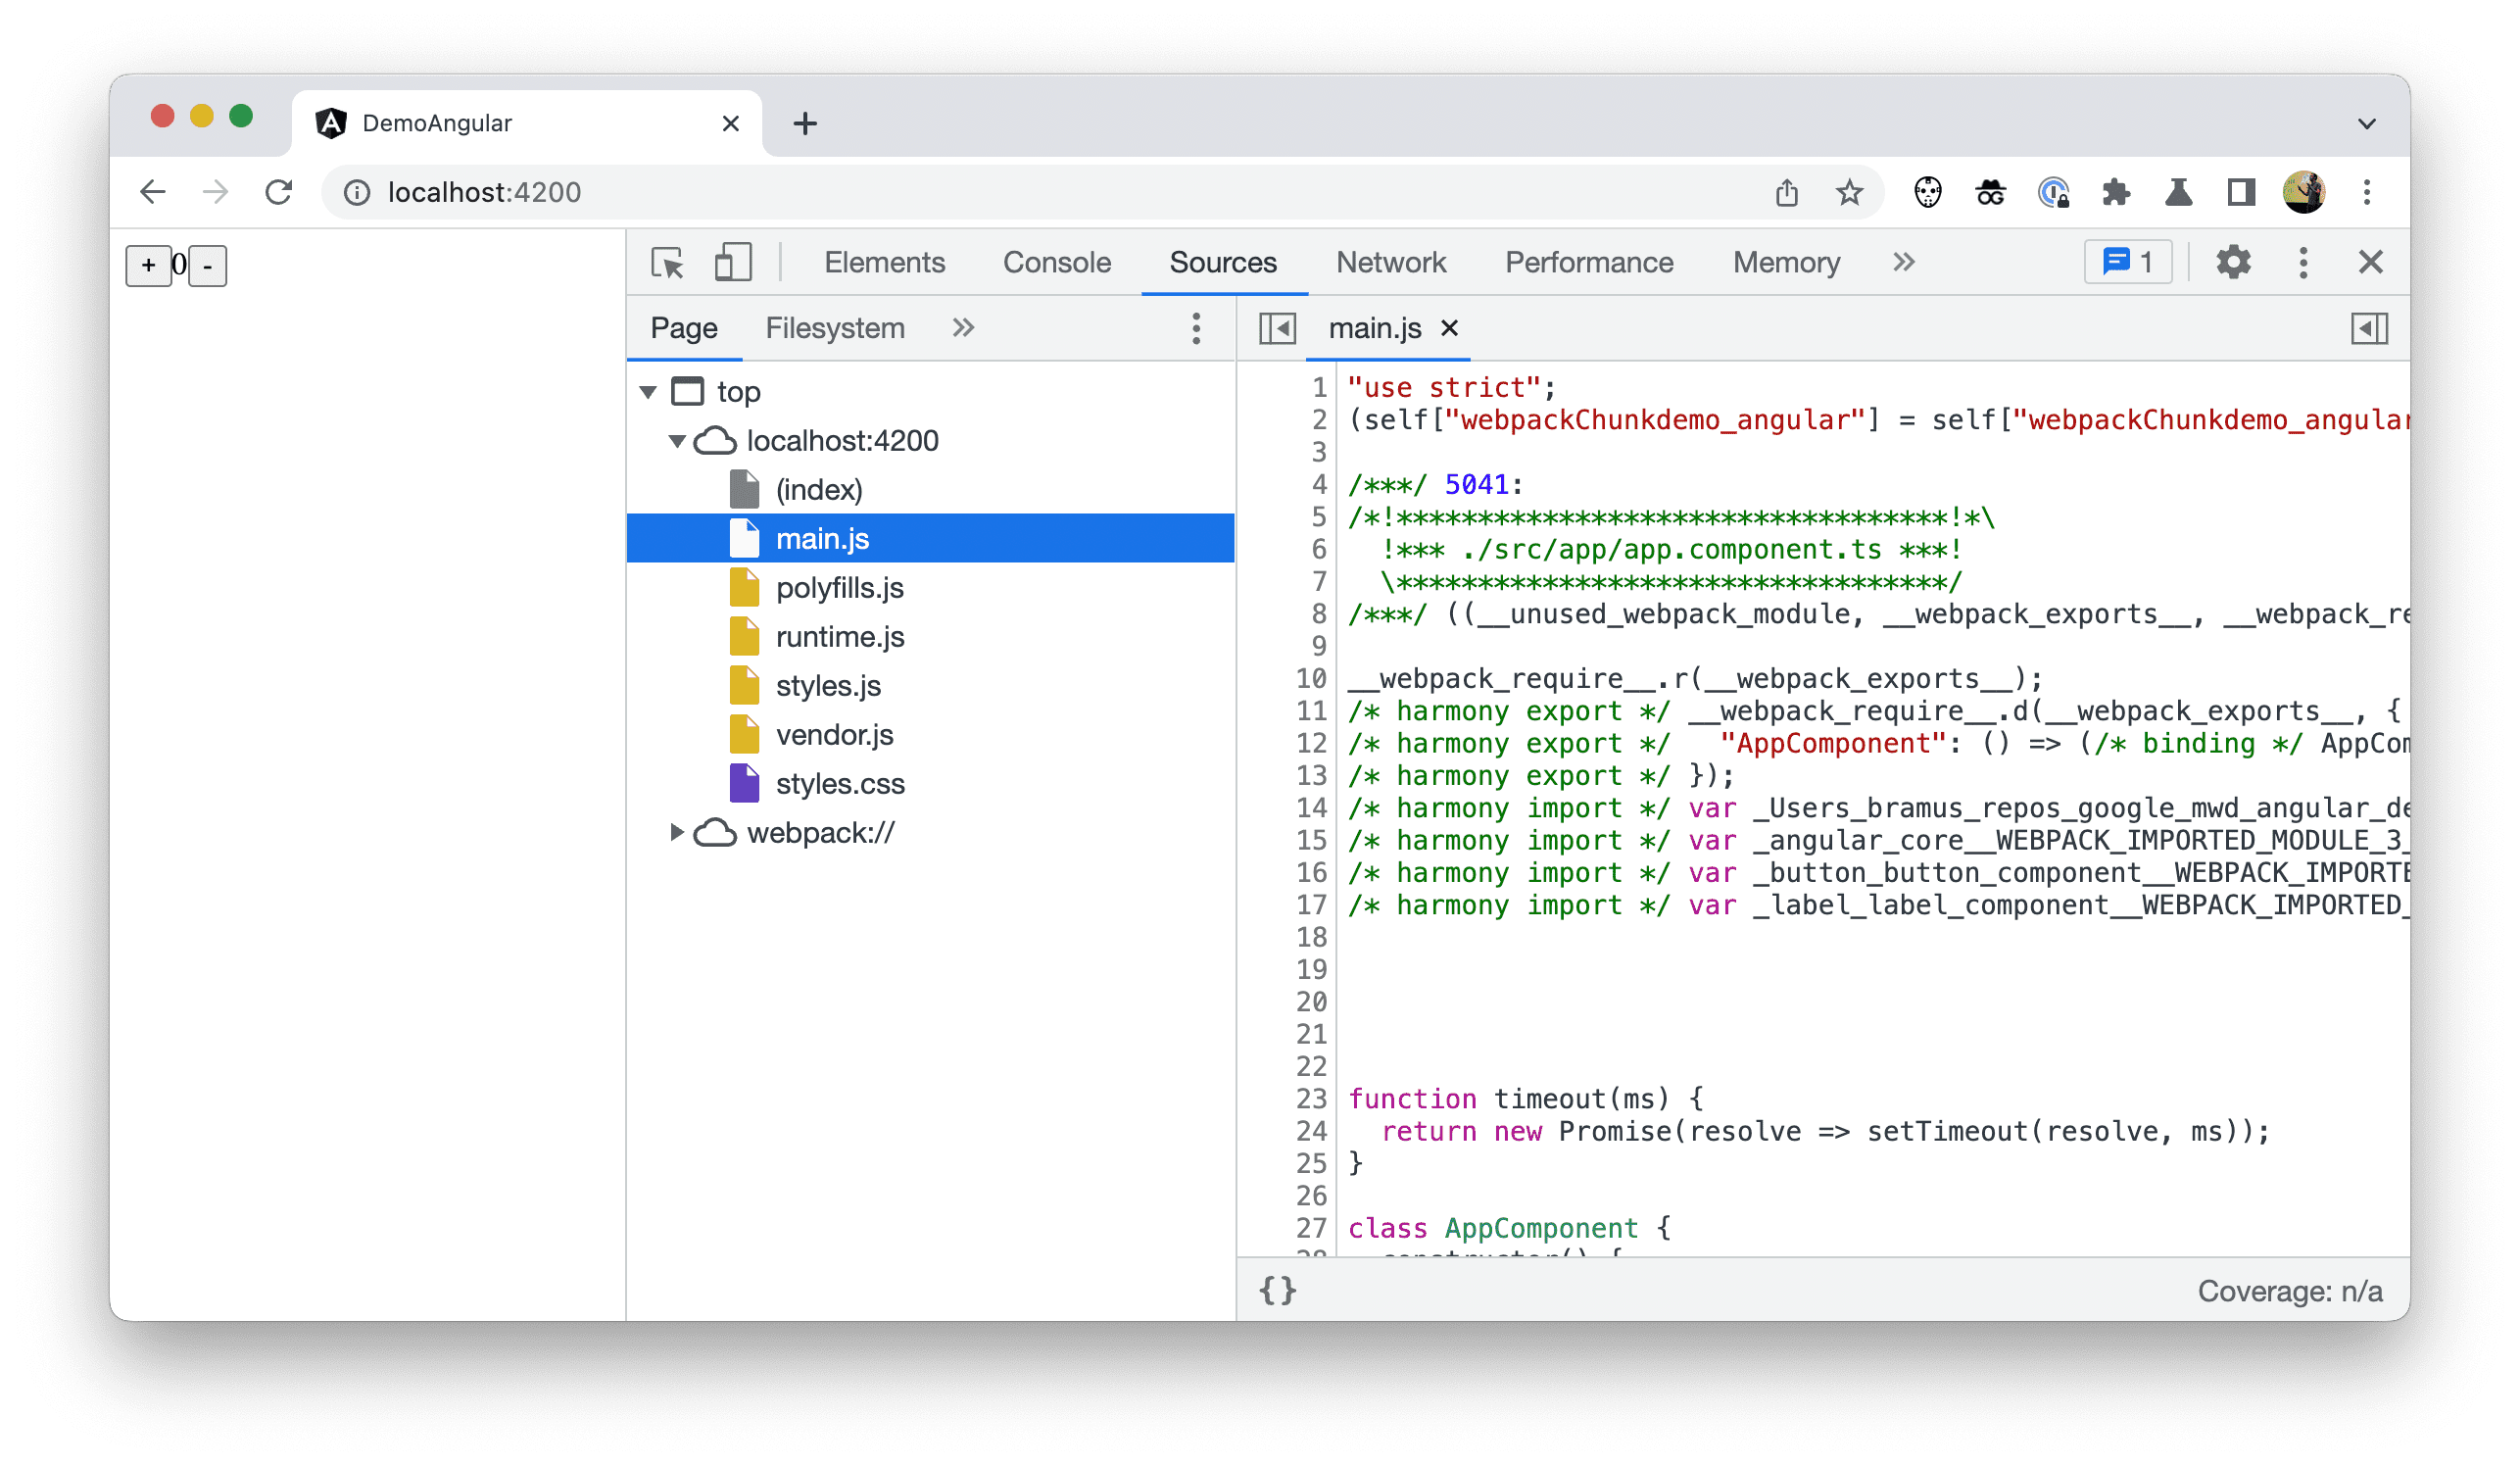 Chrome 開發人員工具中的檔案樹狀結構螢幕截圖，顯示已部署的程式碼。